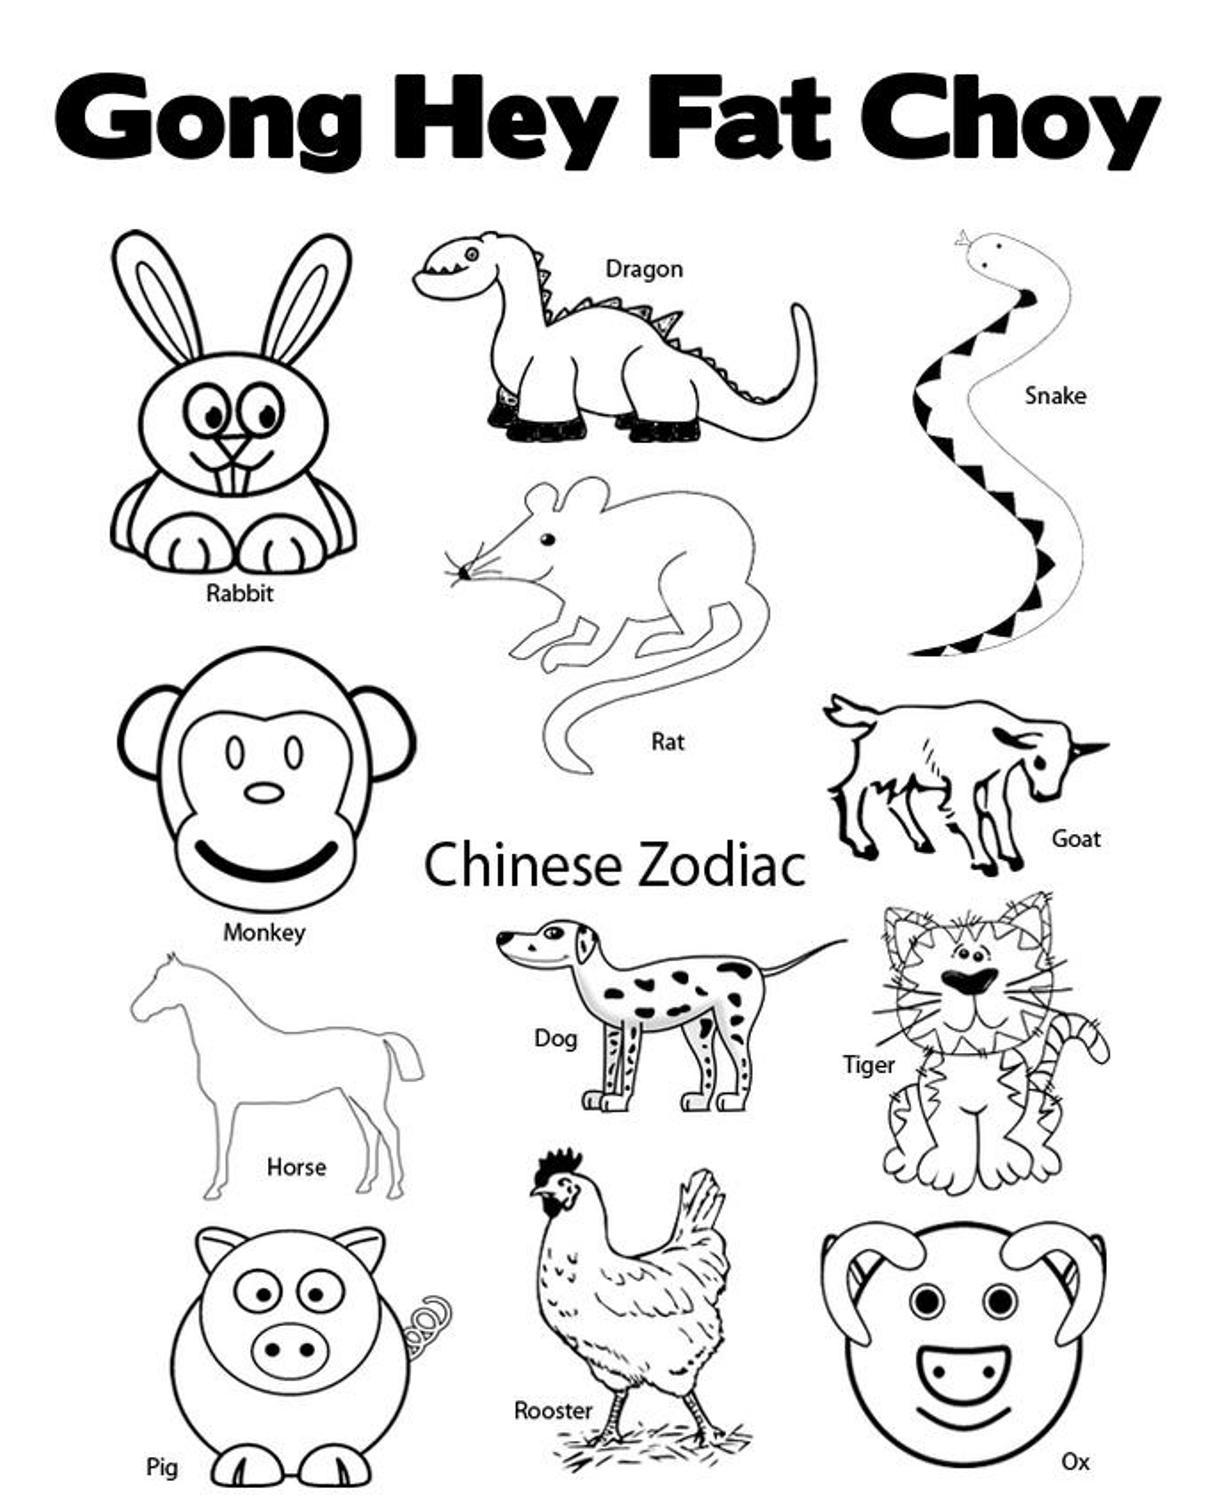 Chinese Zodiac Animals Clip Art, Chinese New Year